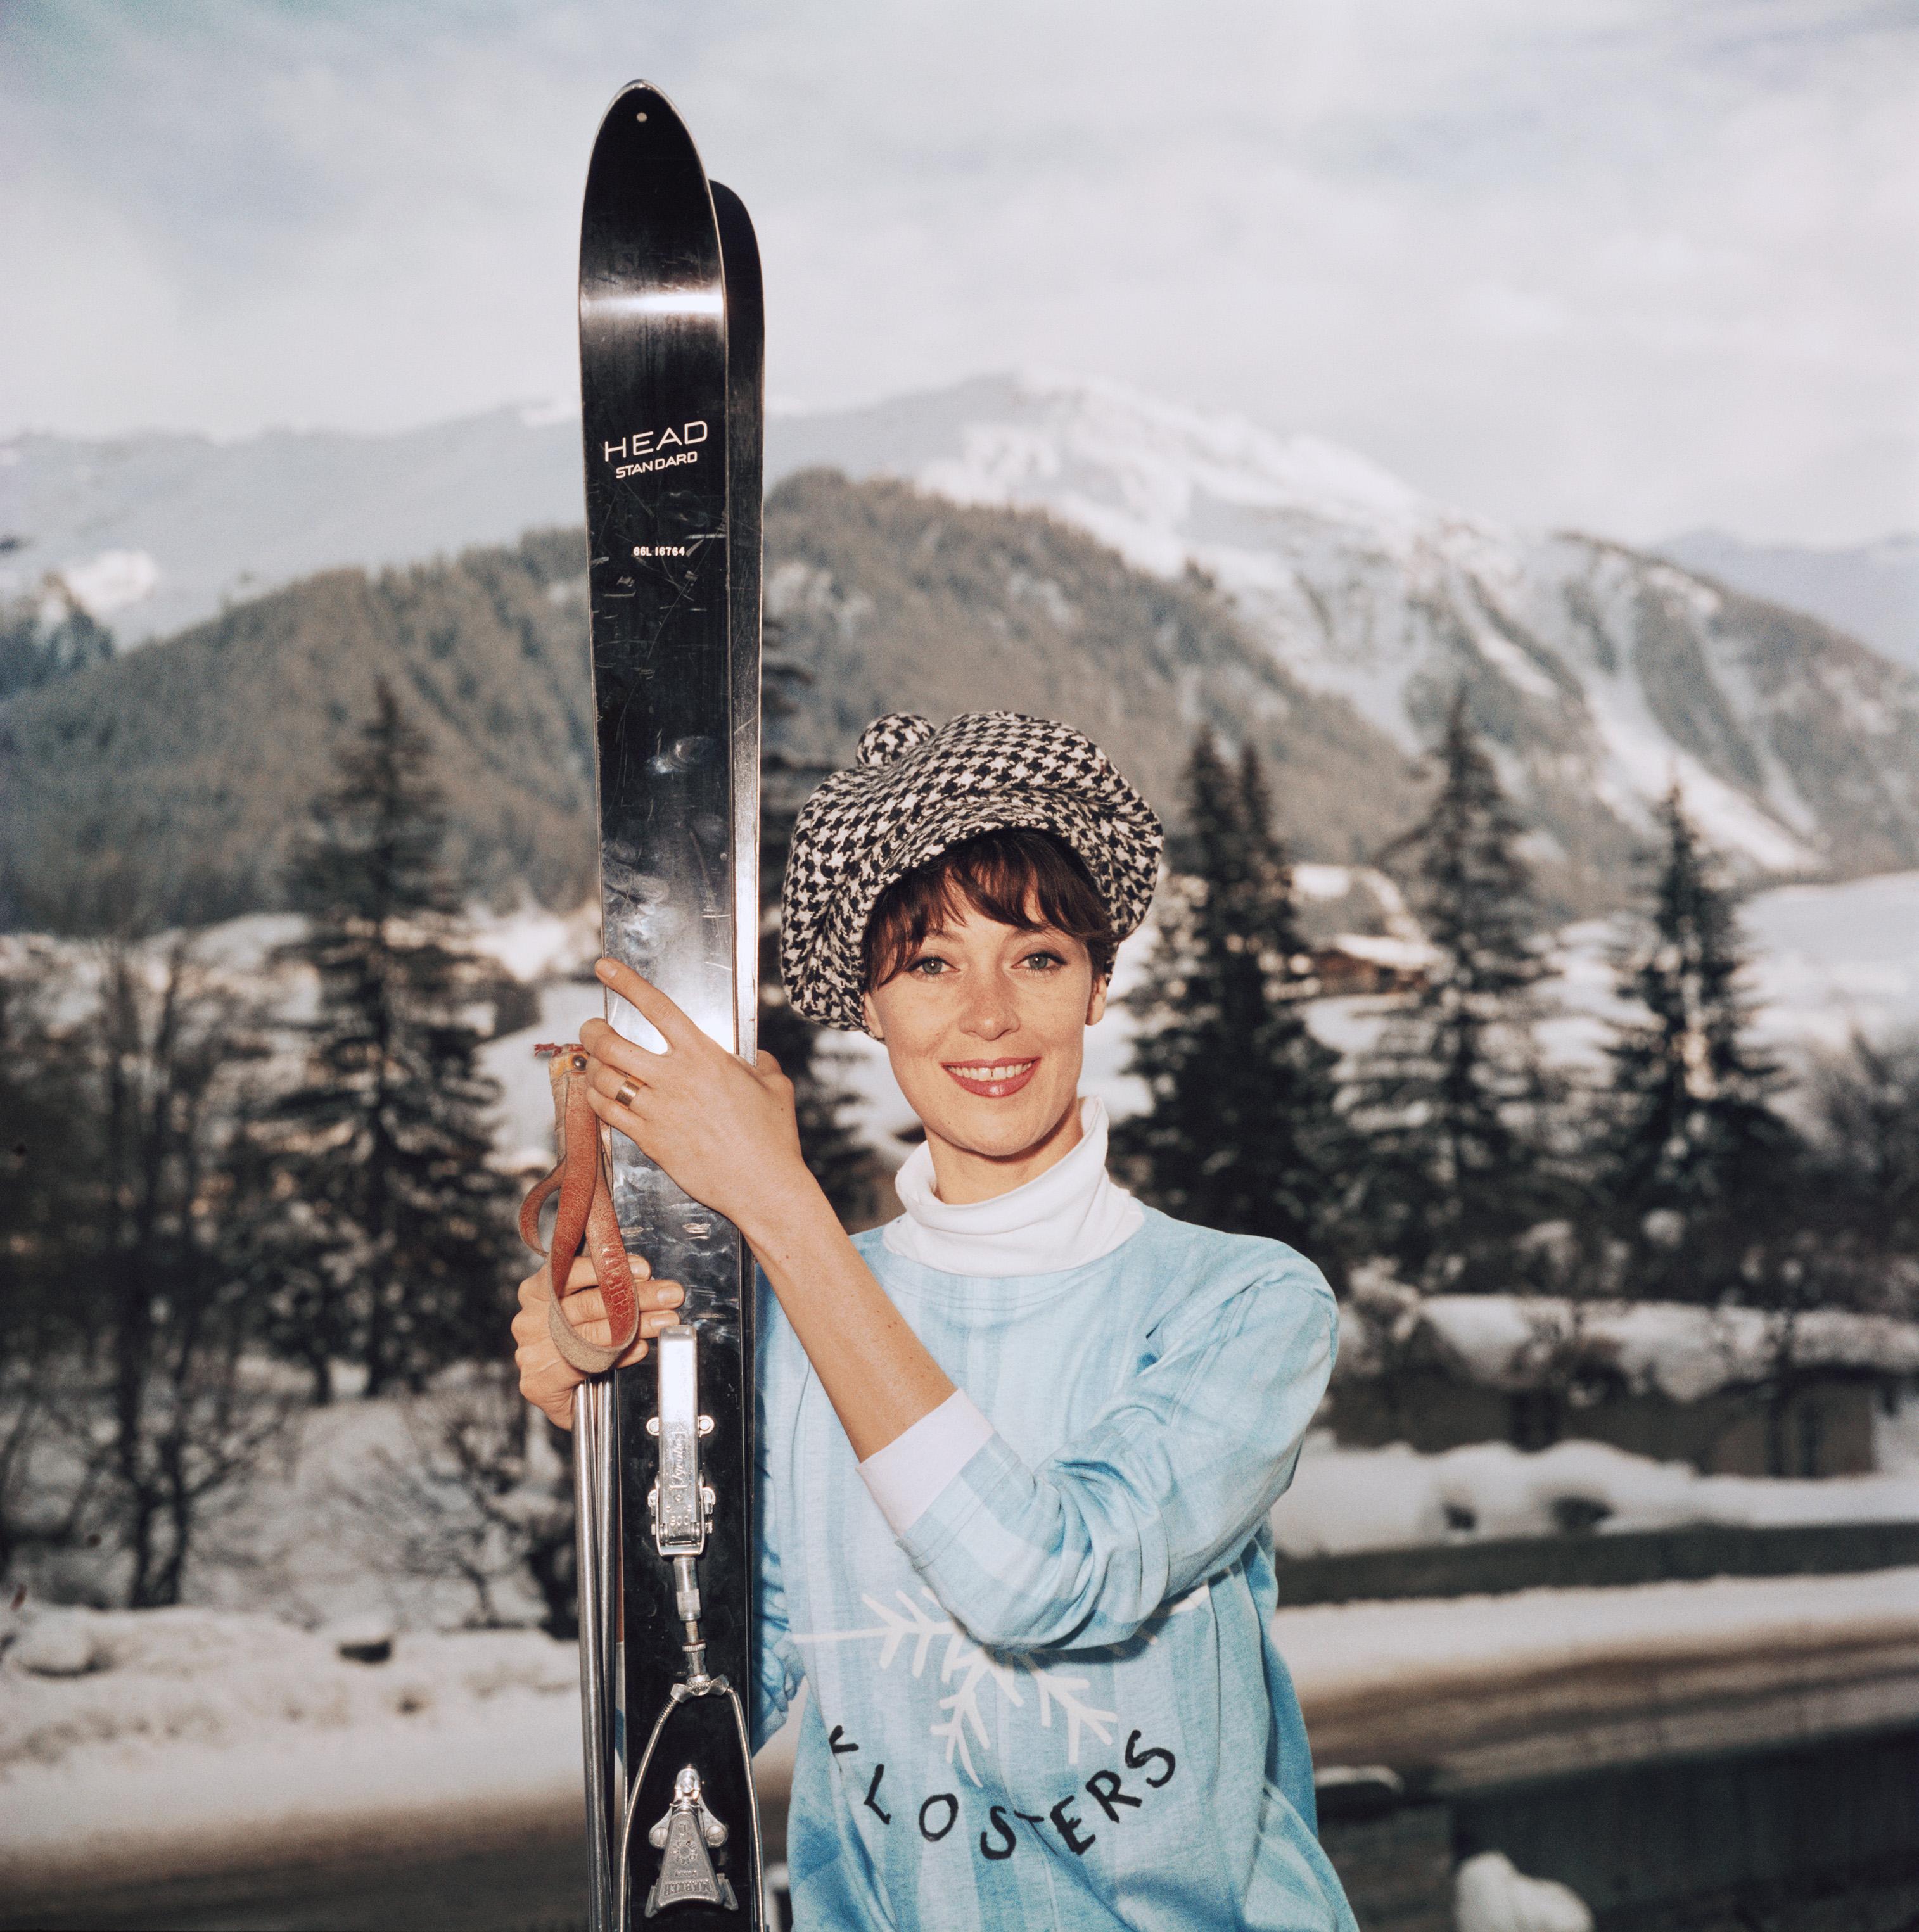 1963: Model Barbara Mullen beim Skifahren in Klosters, Schweiz.

Slim Aarons Estate Edition, inklusive Echtheitszertifikat
Nummeriert und gestempelt vom Slim Aarons Estate
Der Sammler erhält die nächste Nummer der Ausgabe
Moderner Druck vom